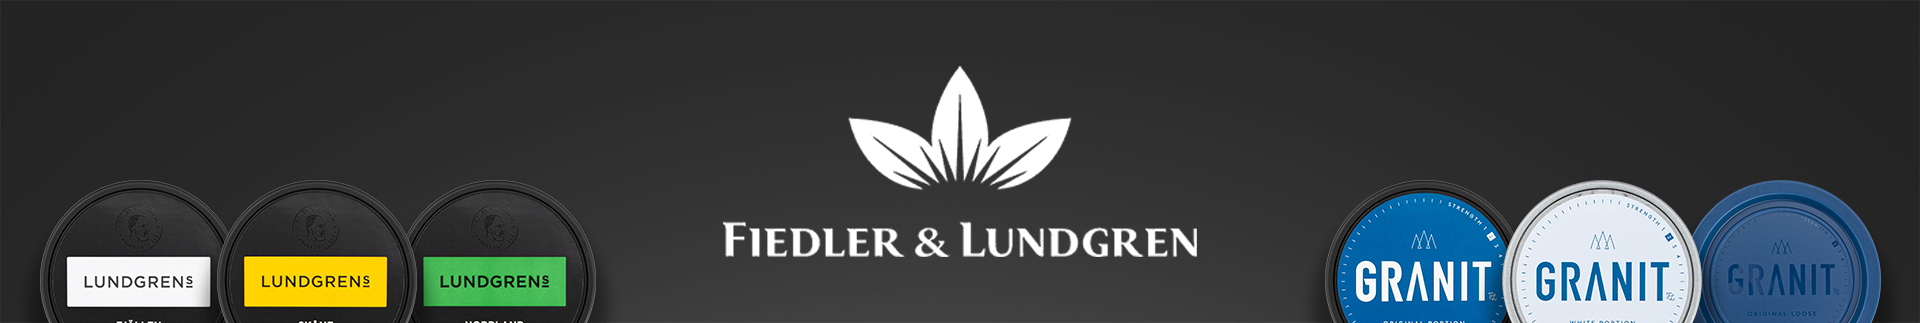 Fiedler & Lundgren